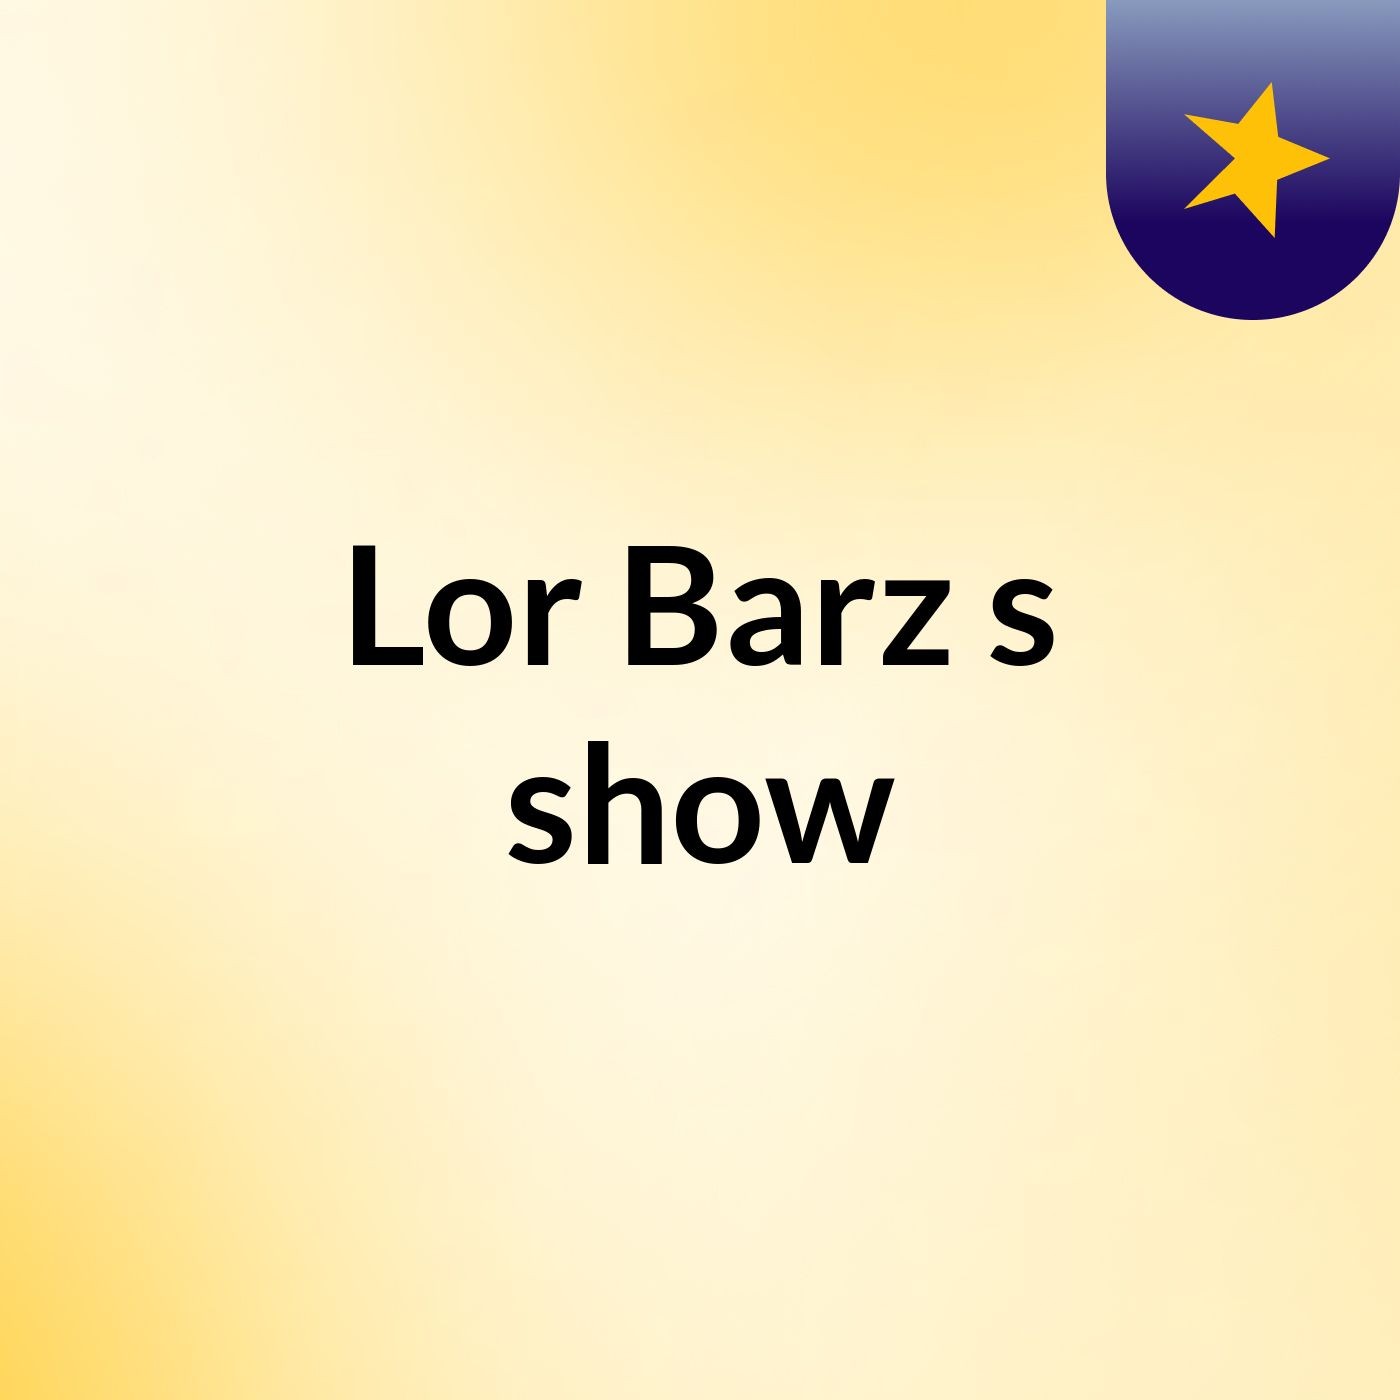 Lor Barz's show